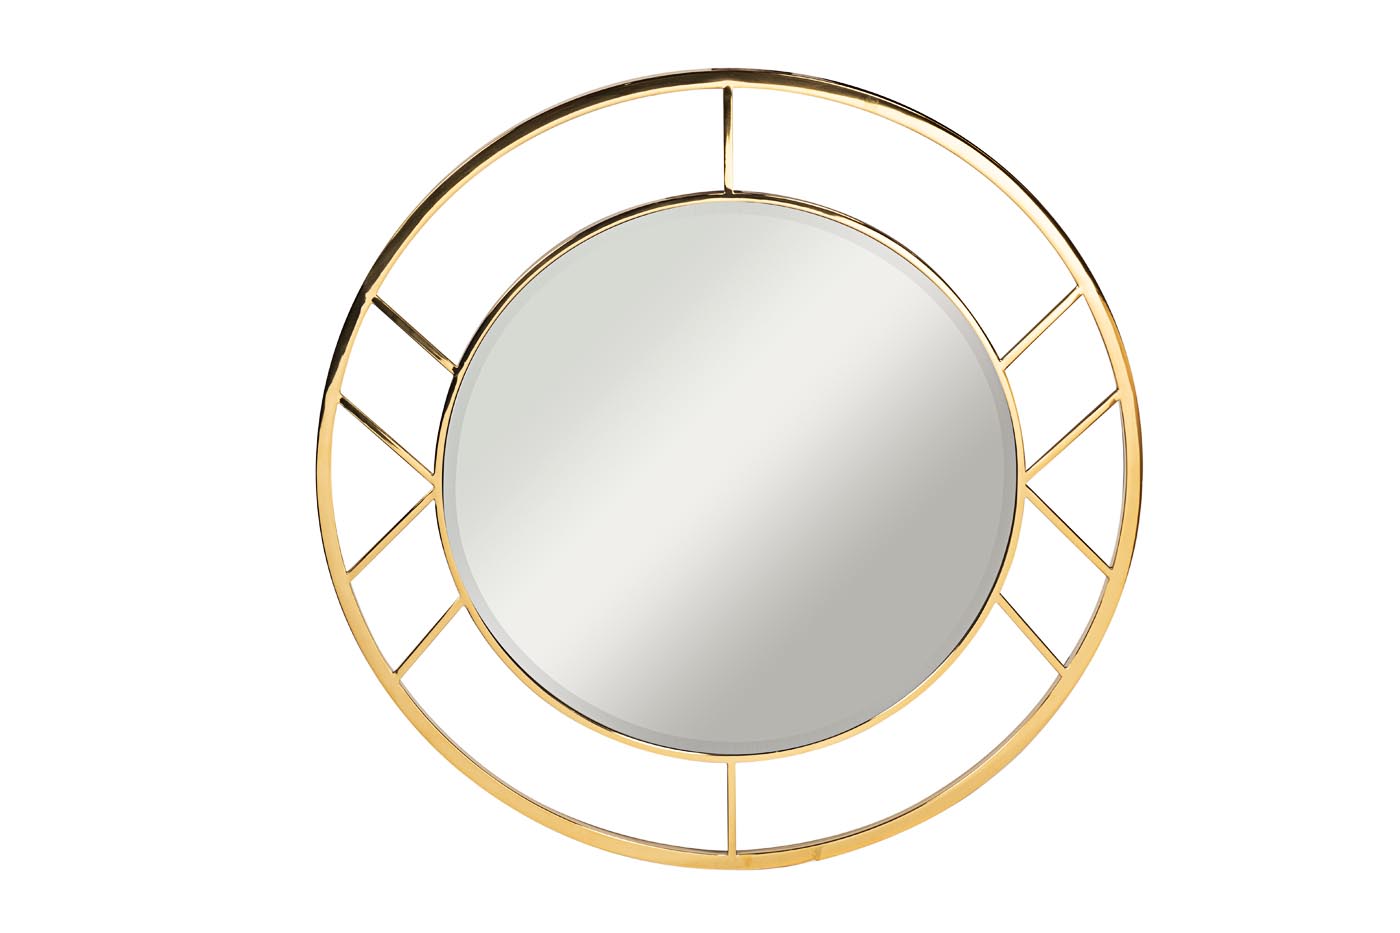 Зеркало круглое в металлической раме (золото) KFG082